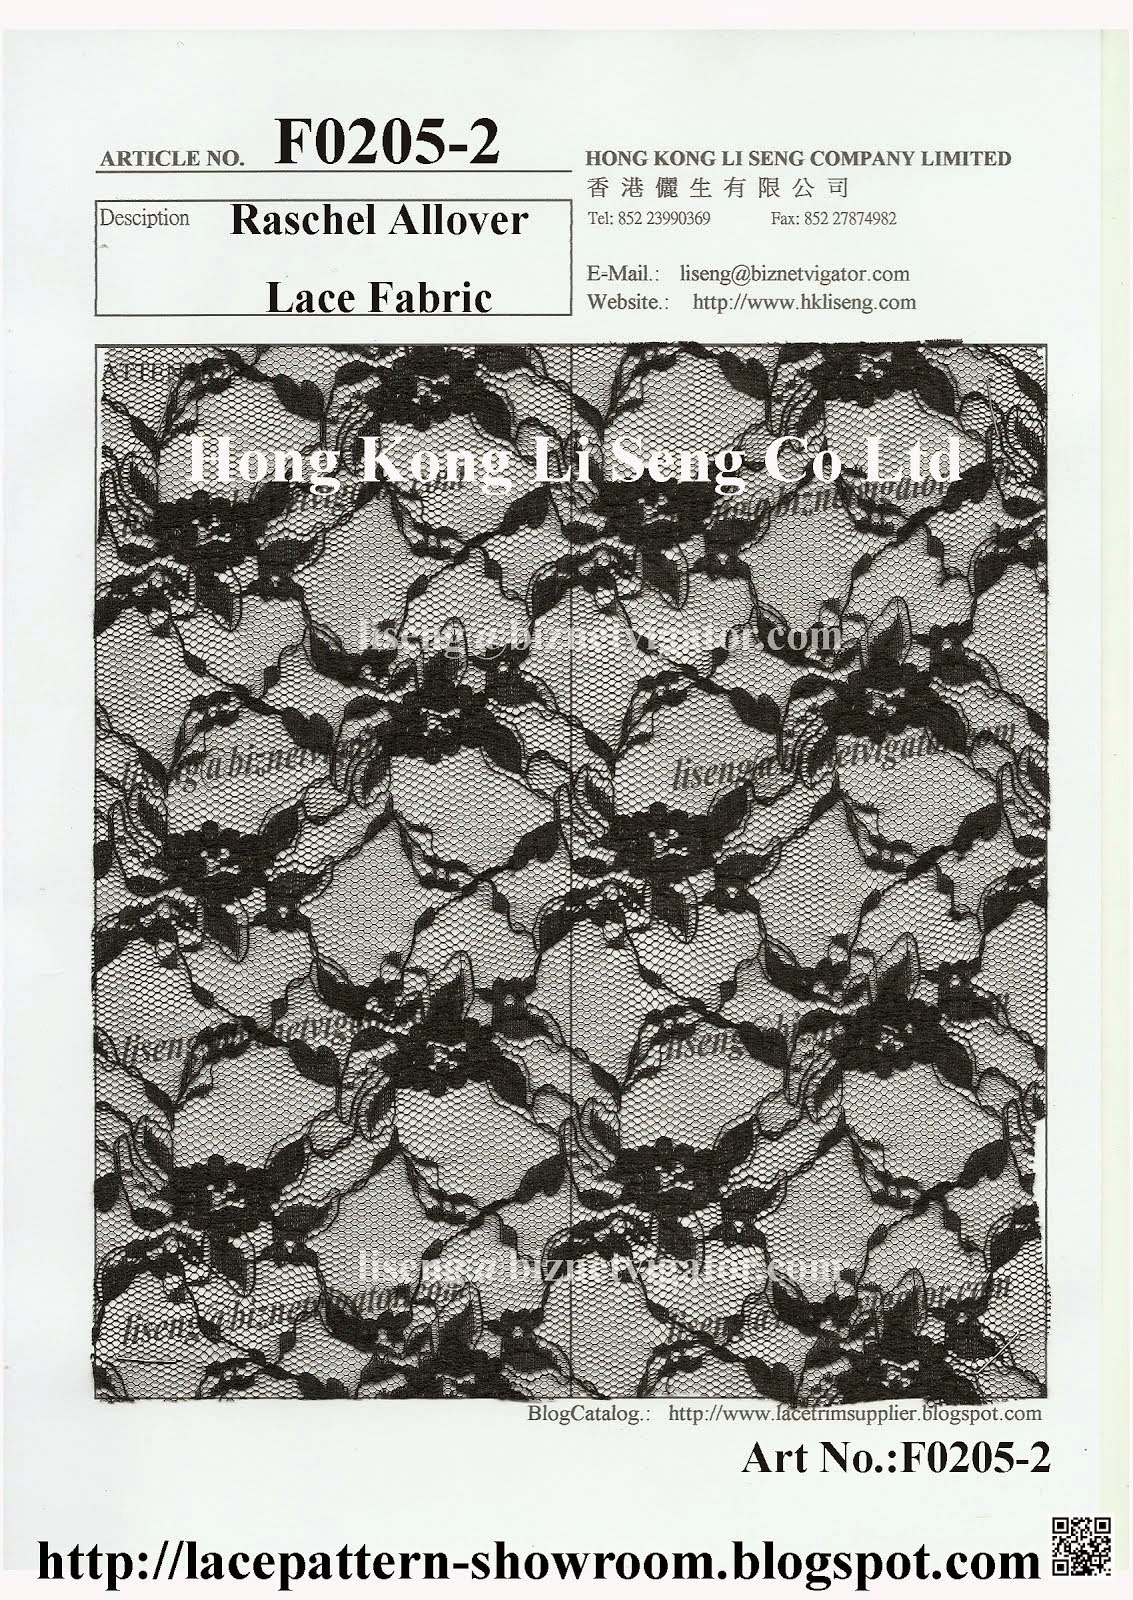 New Raschel Allover Lace Fabric Manufacturer - Hong Kong Li Seng Co Ltd